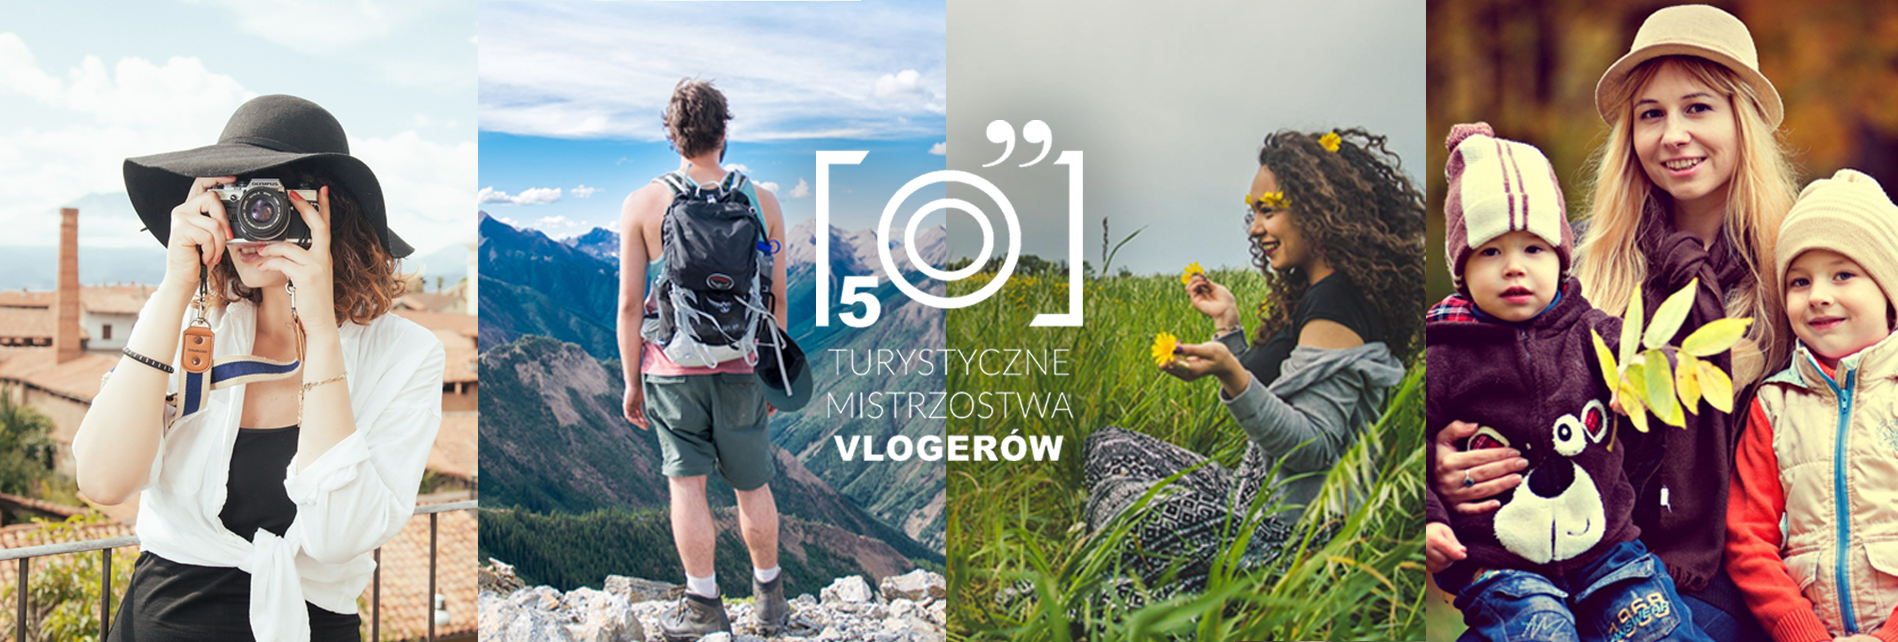 V Mistrzostwa Turystyczne Vlogerów – Głosowanie - Turystyczne Mistrzostwa Blogerów